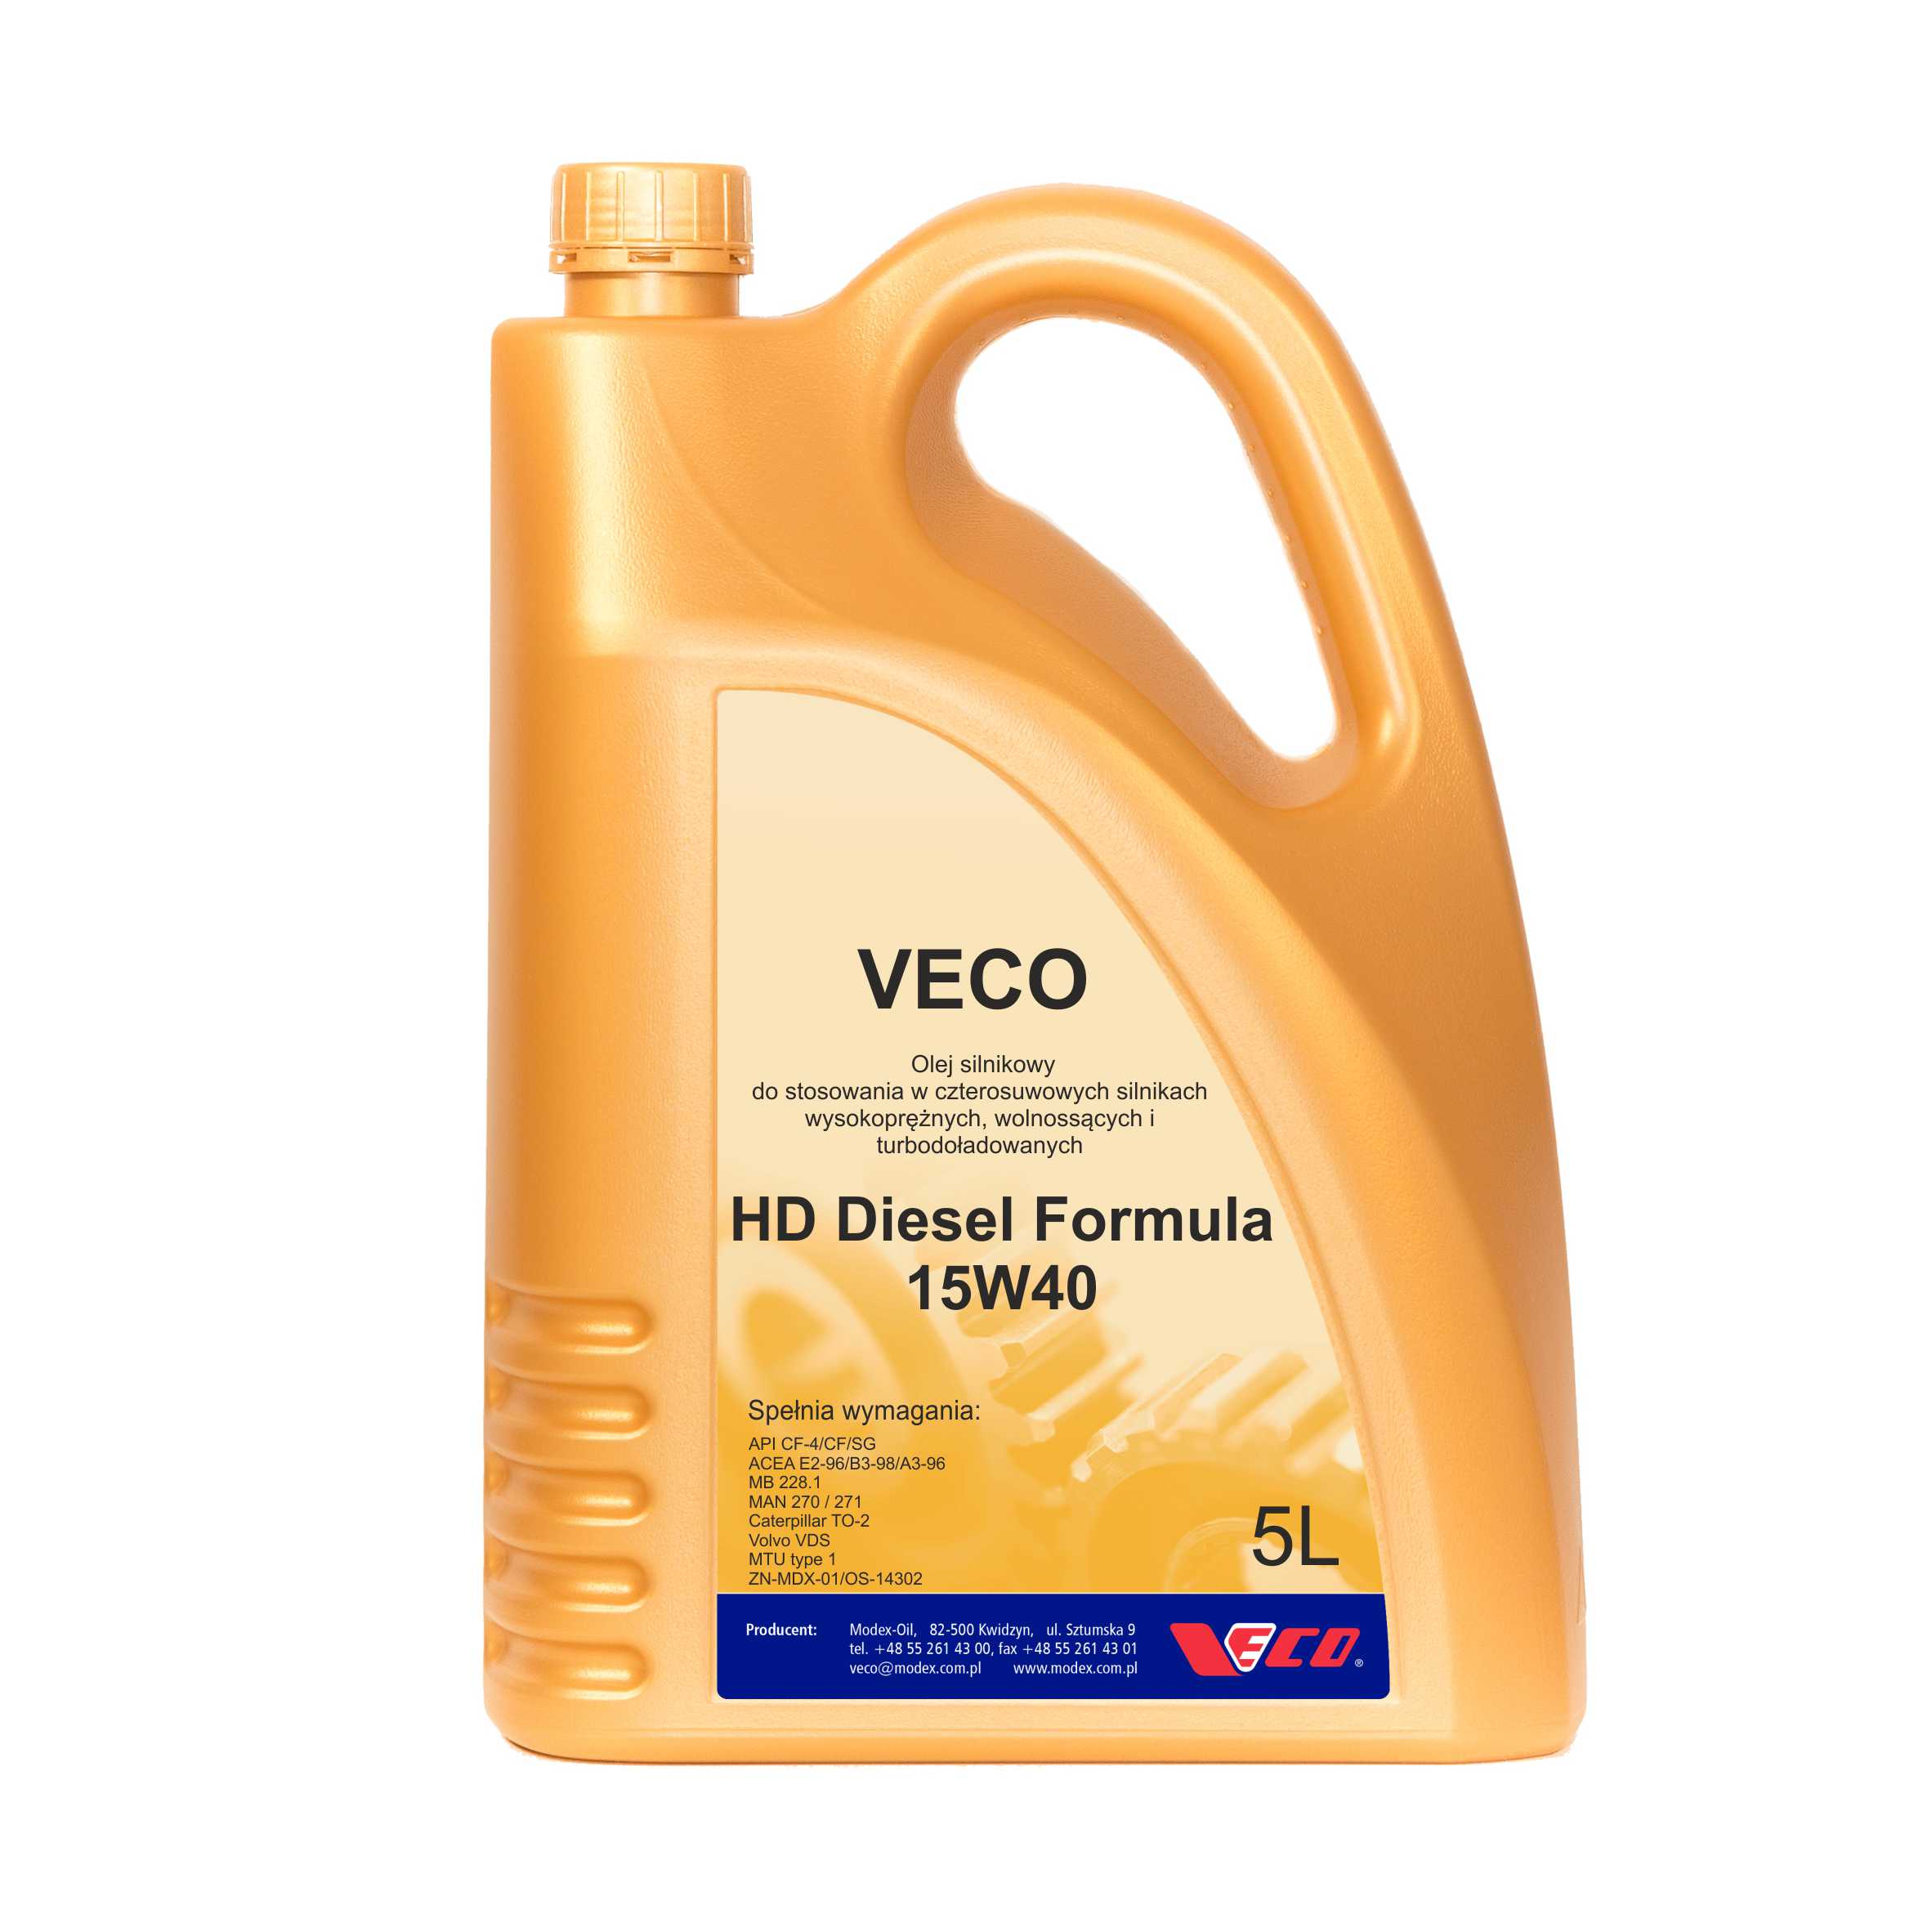 VECO HD Diesel Formula 15W40 opak 5L class=